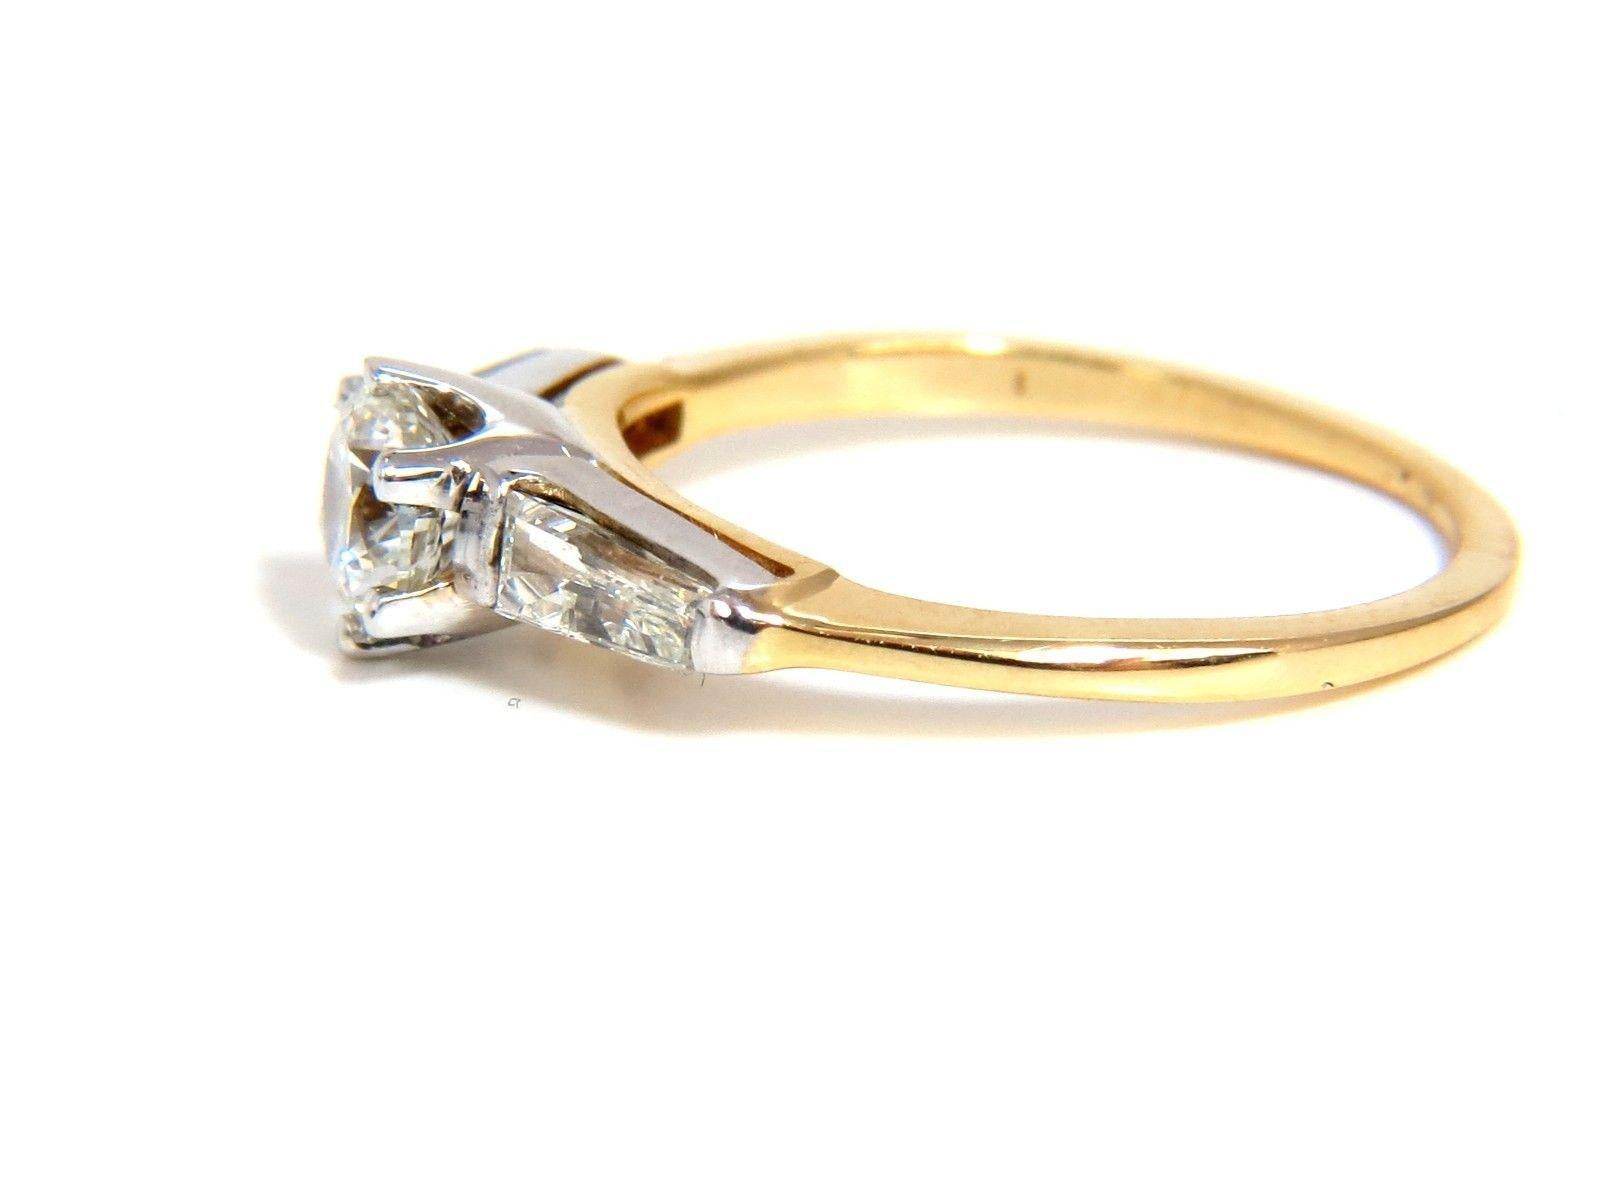 GIA zertifiziert: .51Ct Natural Round Cut Diamanten Ring.

Bericht # 2155465879

Angabe: H-Farbe Si-1 Klarheit.

(Keine sichtbaren schwarzen Einschlüsse).



.30ct. Seitlich Diamanten im Baguetteschliff:

H-Farbe Vs-2 Klarheit.

14kt. Gelbgold 

2